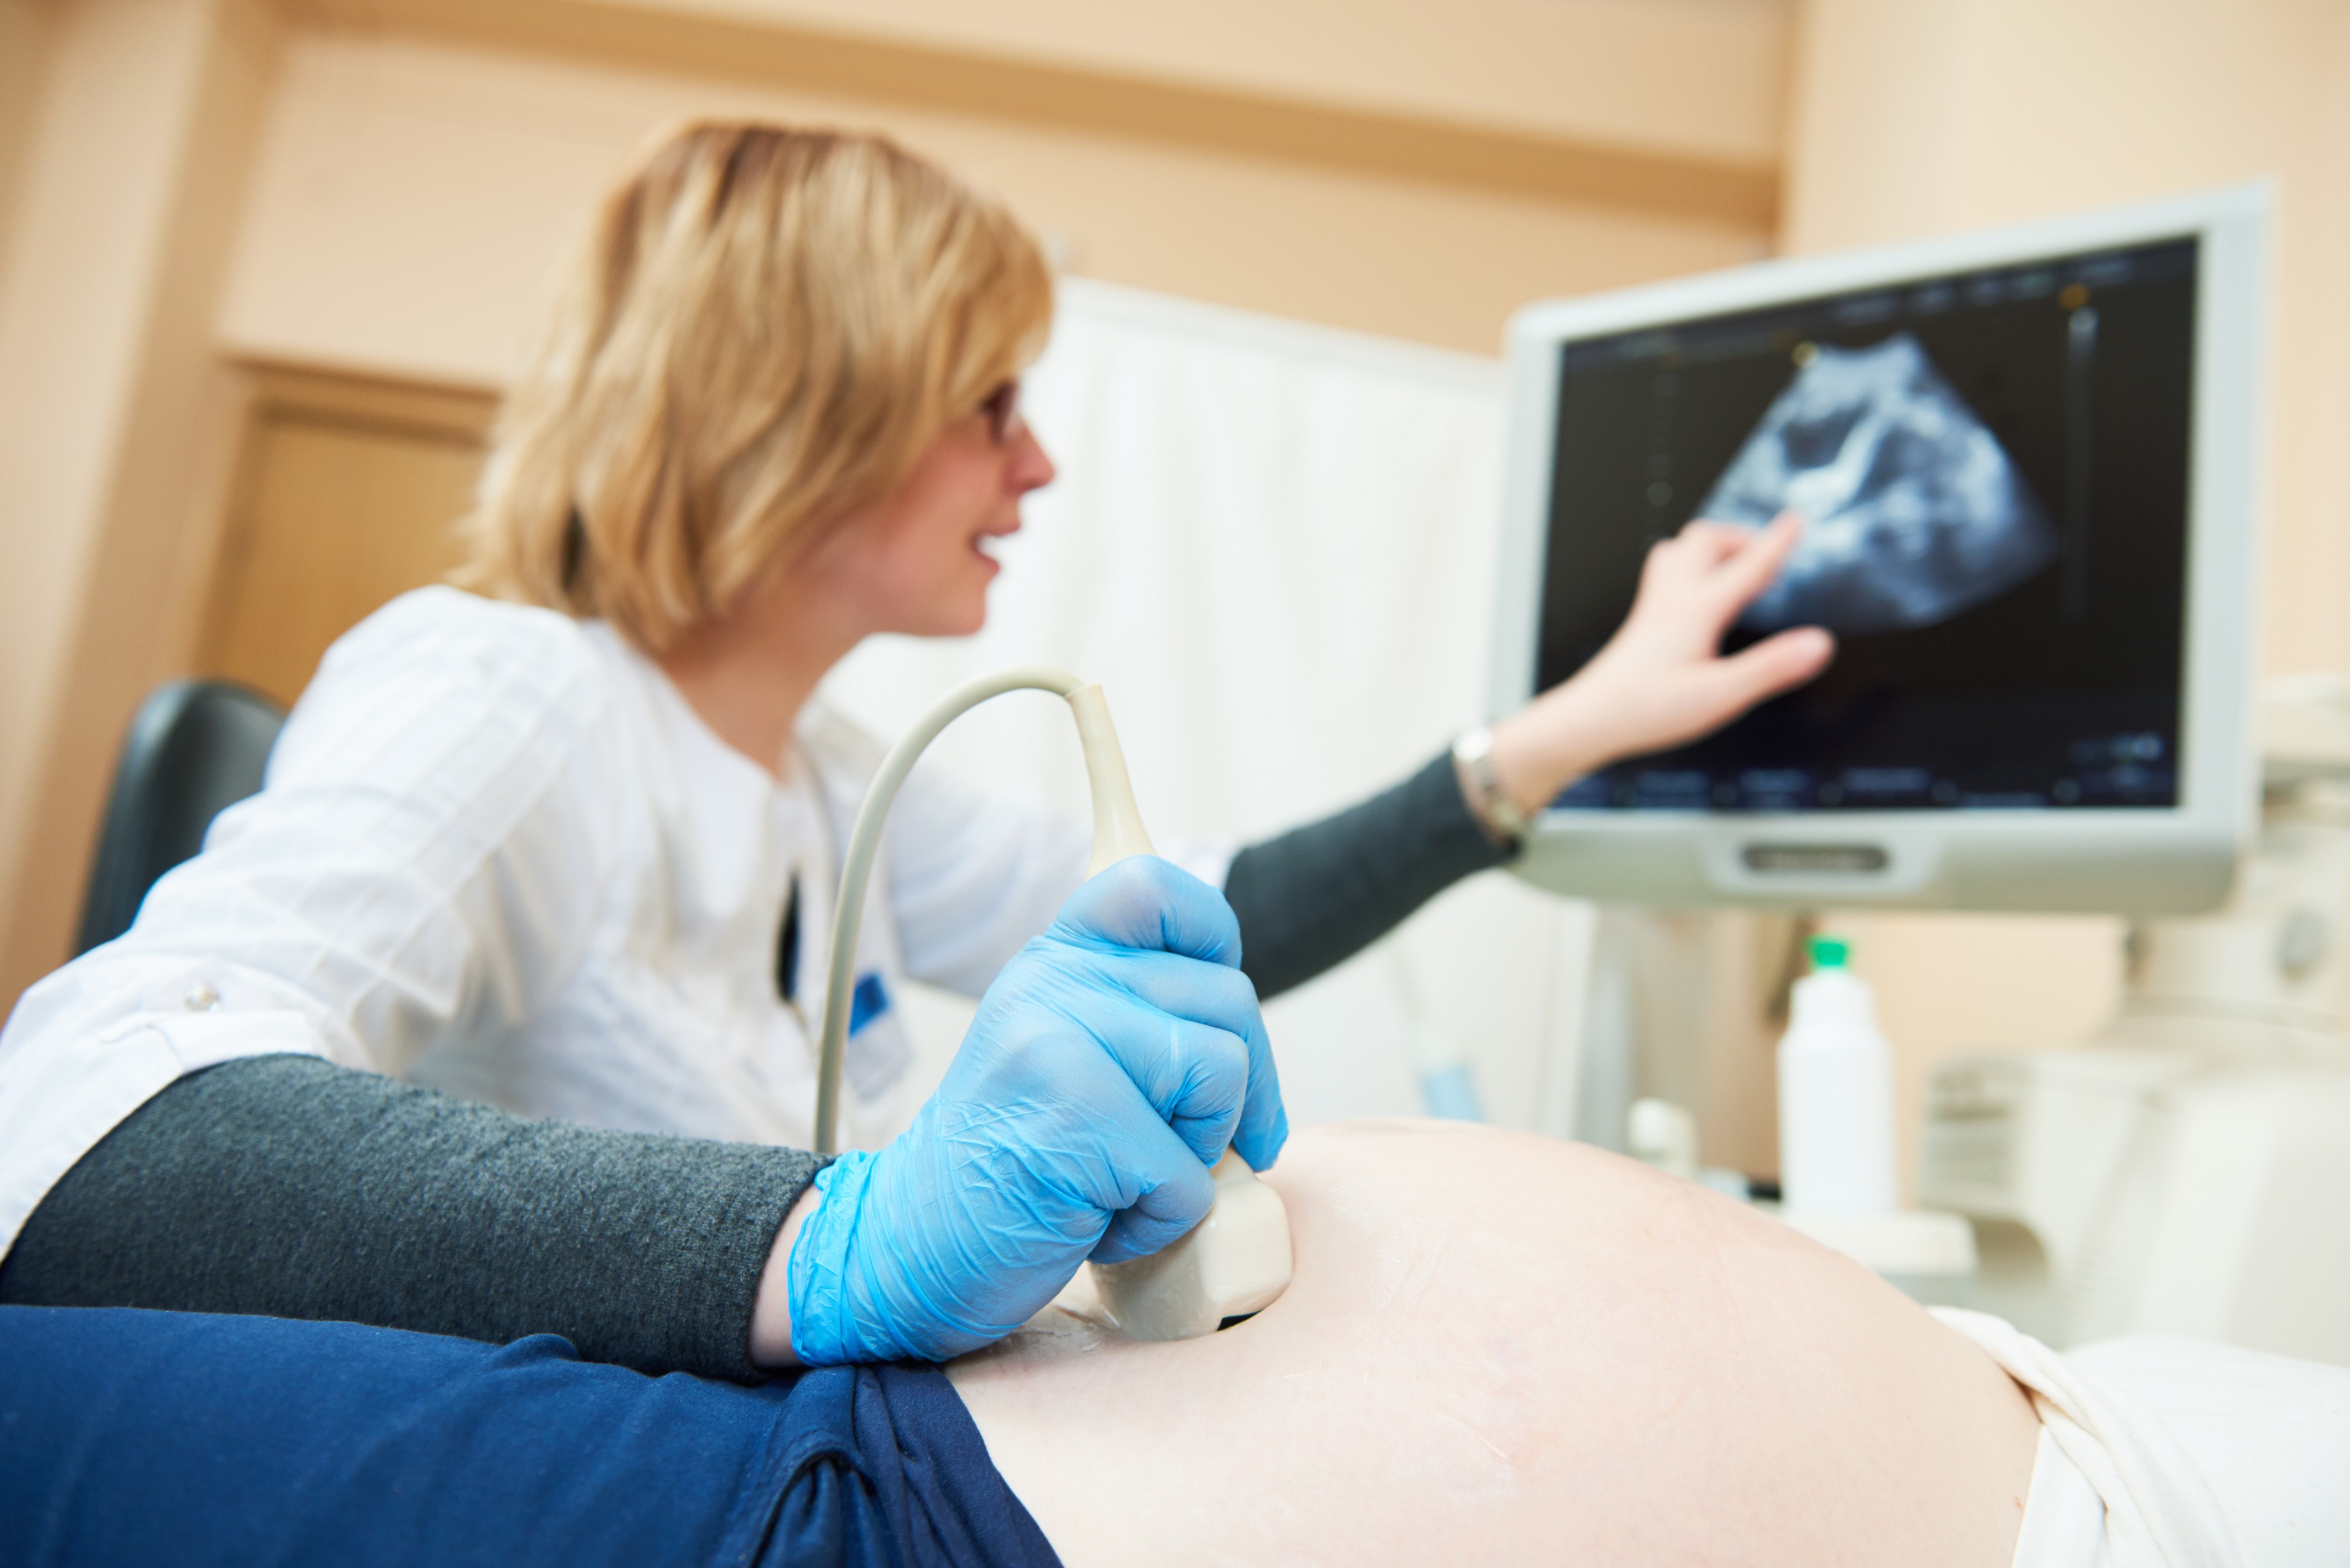 prenatal diagnostic essay